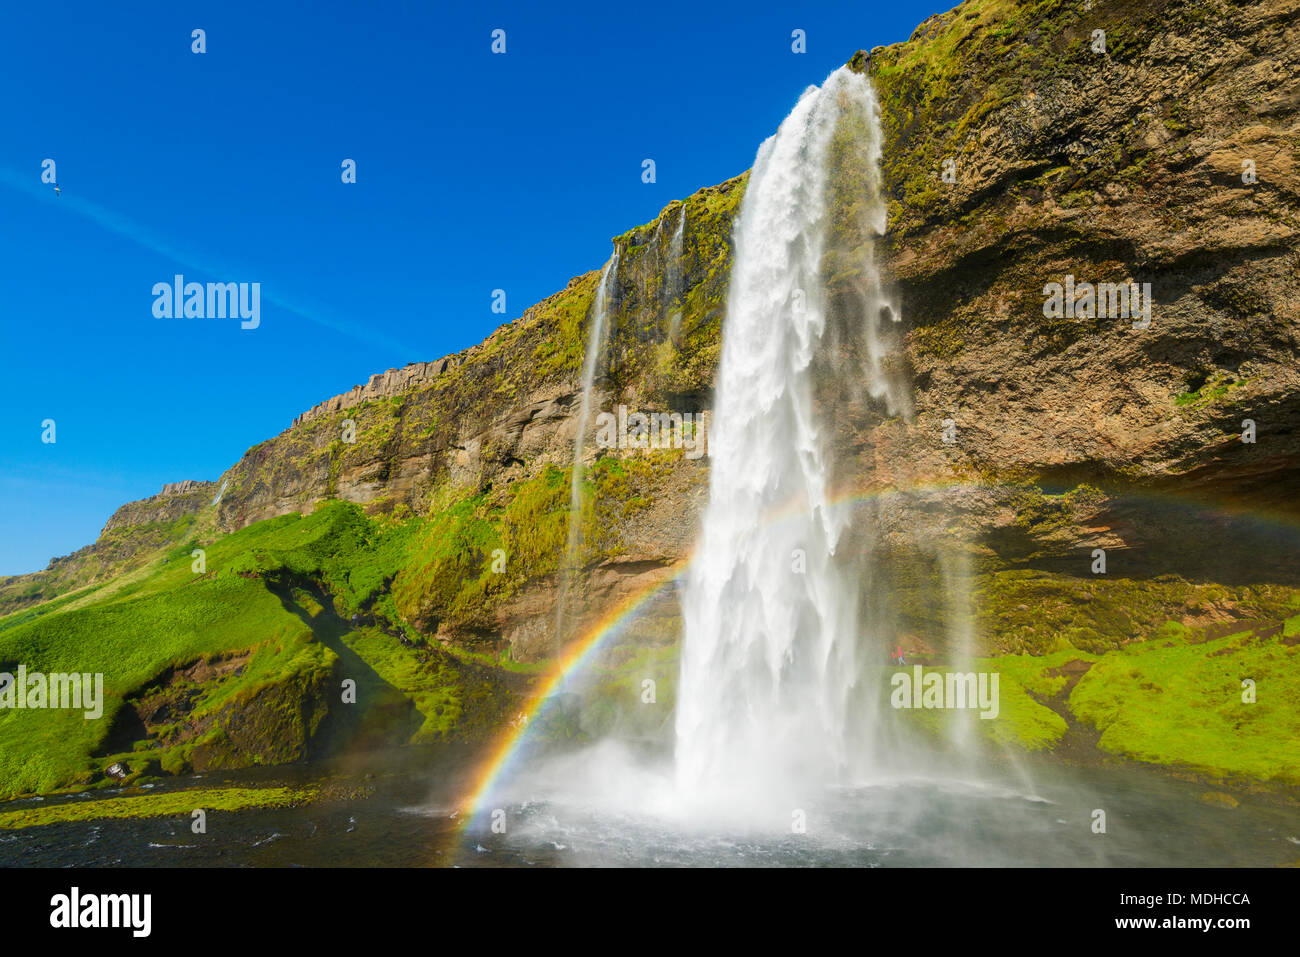 Cascata arcobaleno immagini e fotografie stock ad alta risoluzione - Alamy